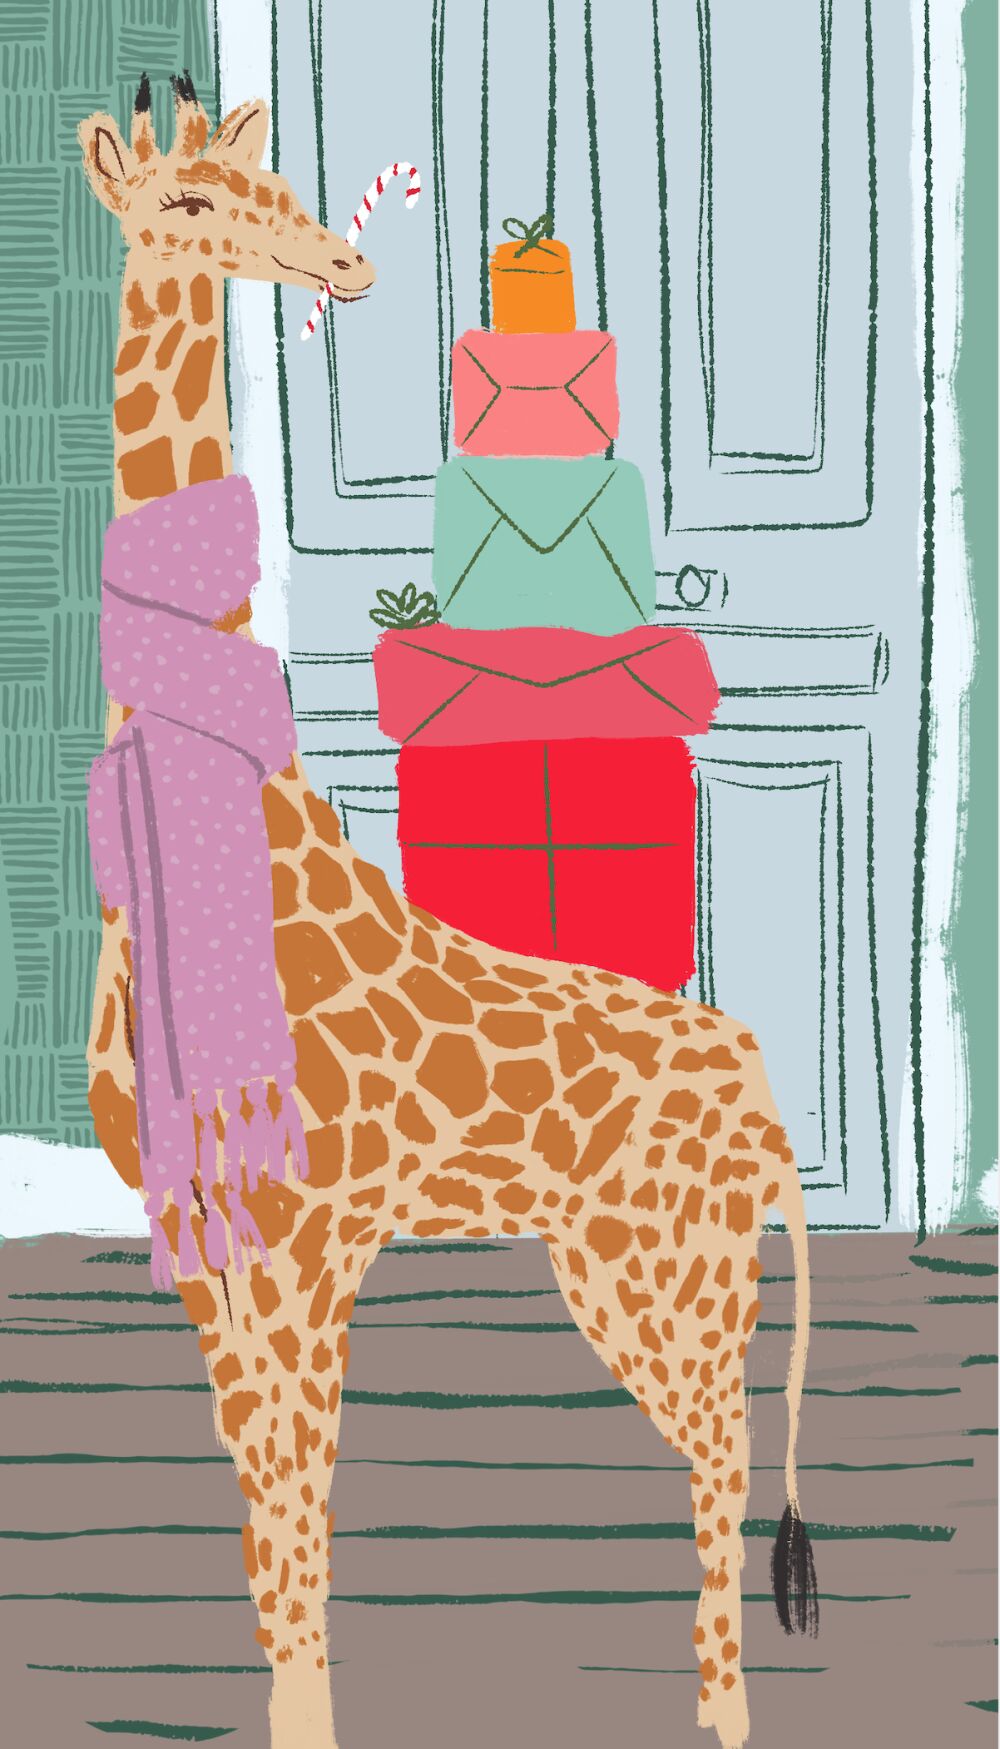 Christmas illustration by Christina Gliha